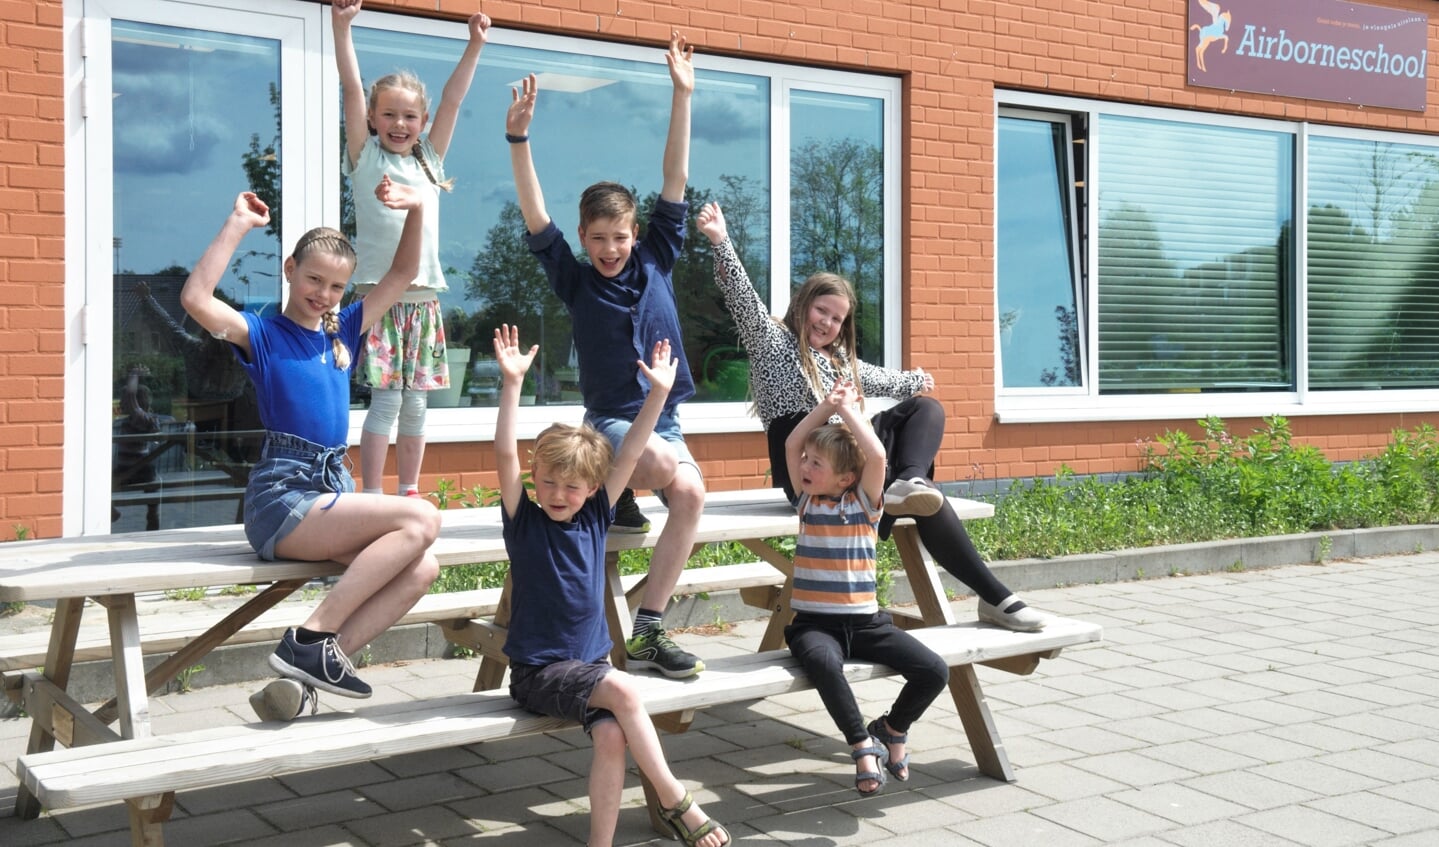 Leerlingen van de Airborneschool in Renkum juichen het verkeersschoolplein van harte toe. 